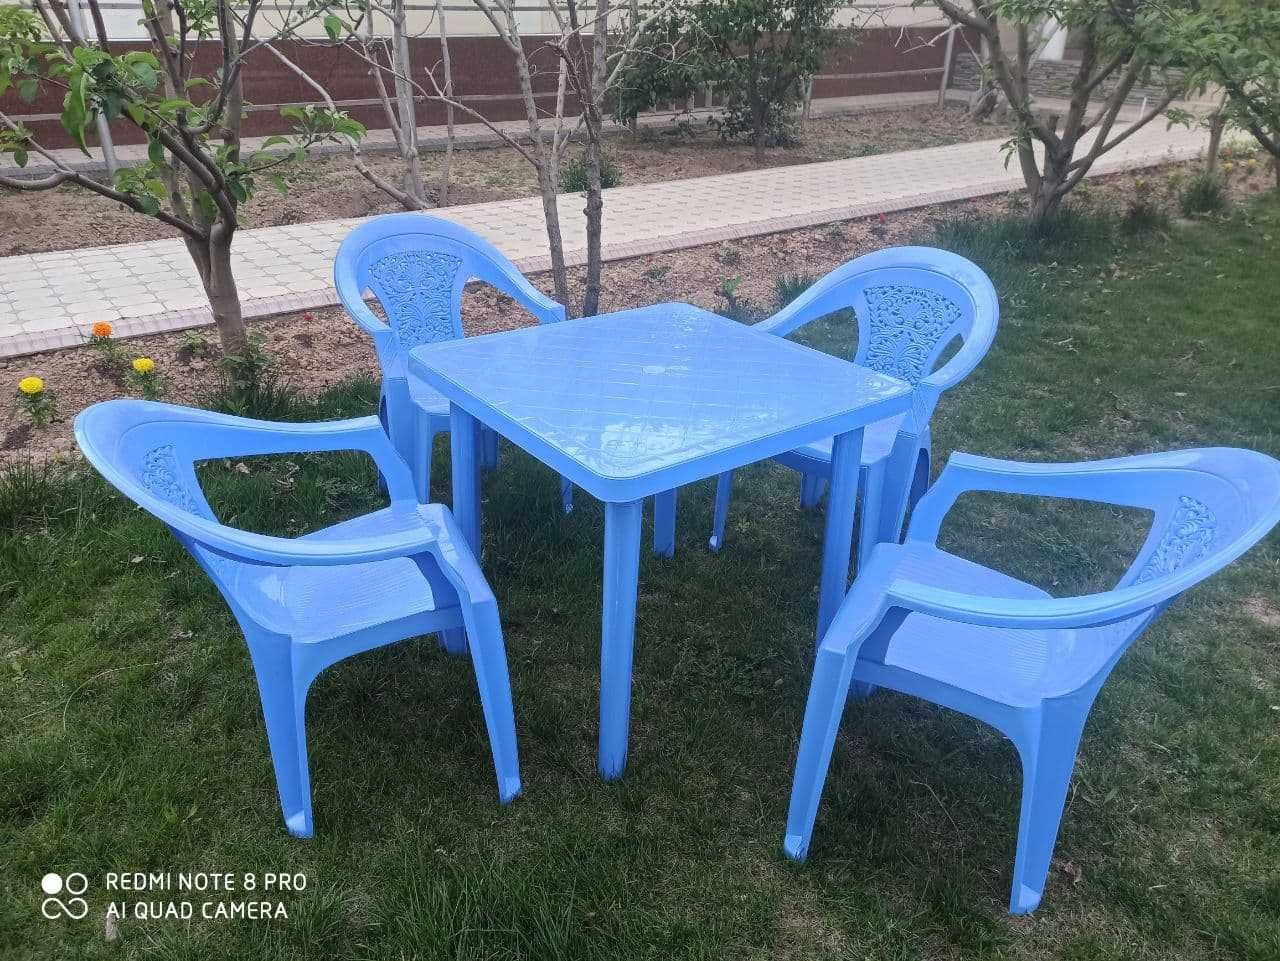 Качественные столы со стульями для дачи и кафе.